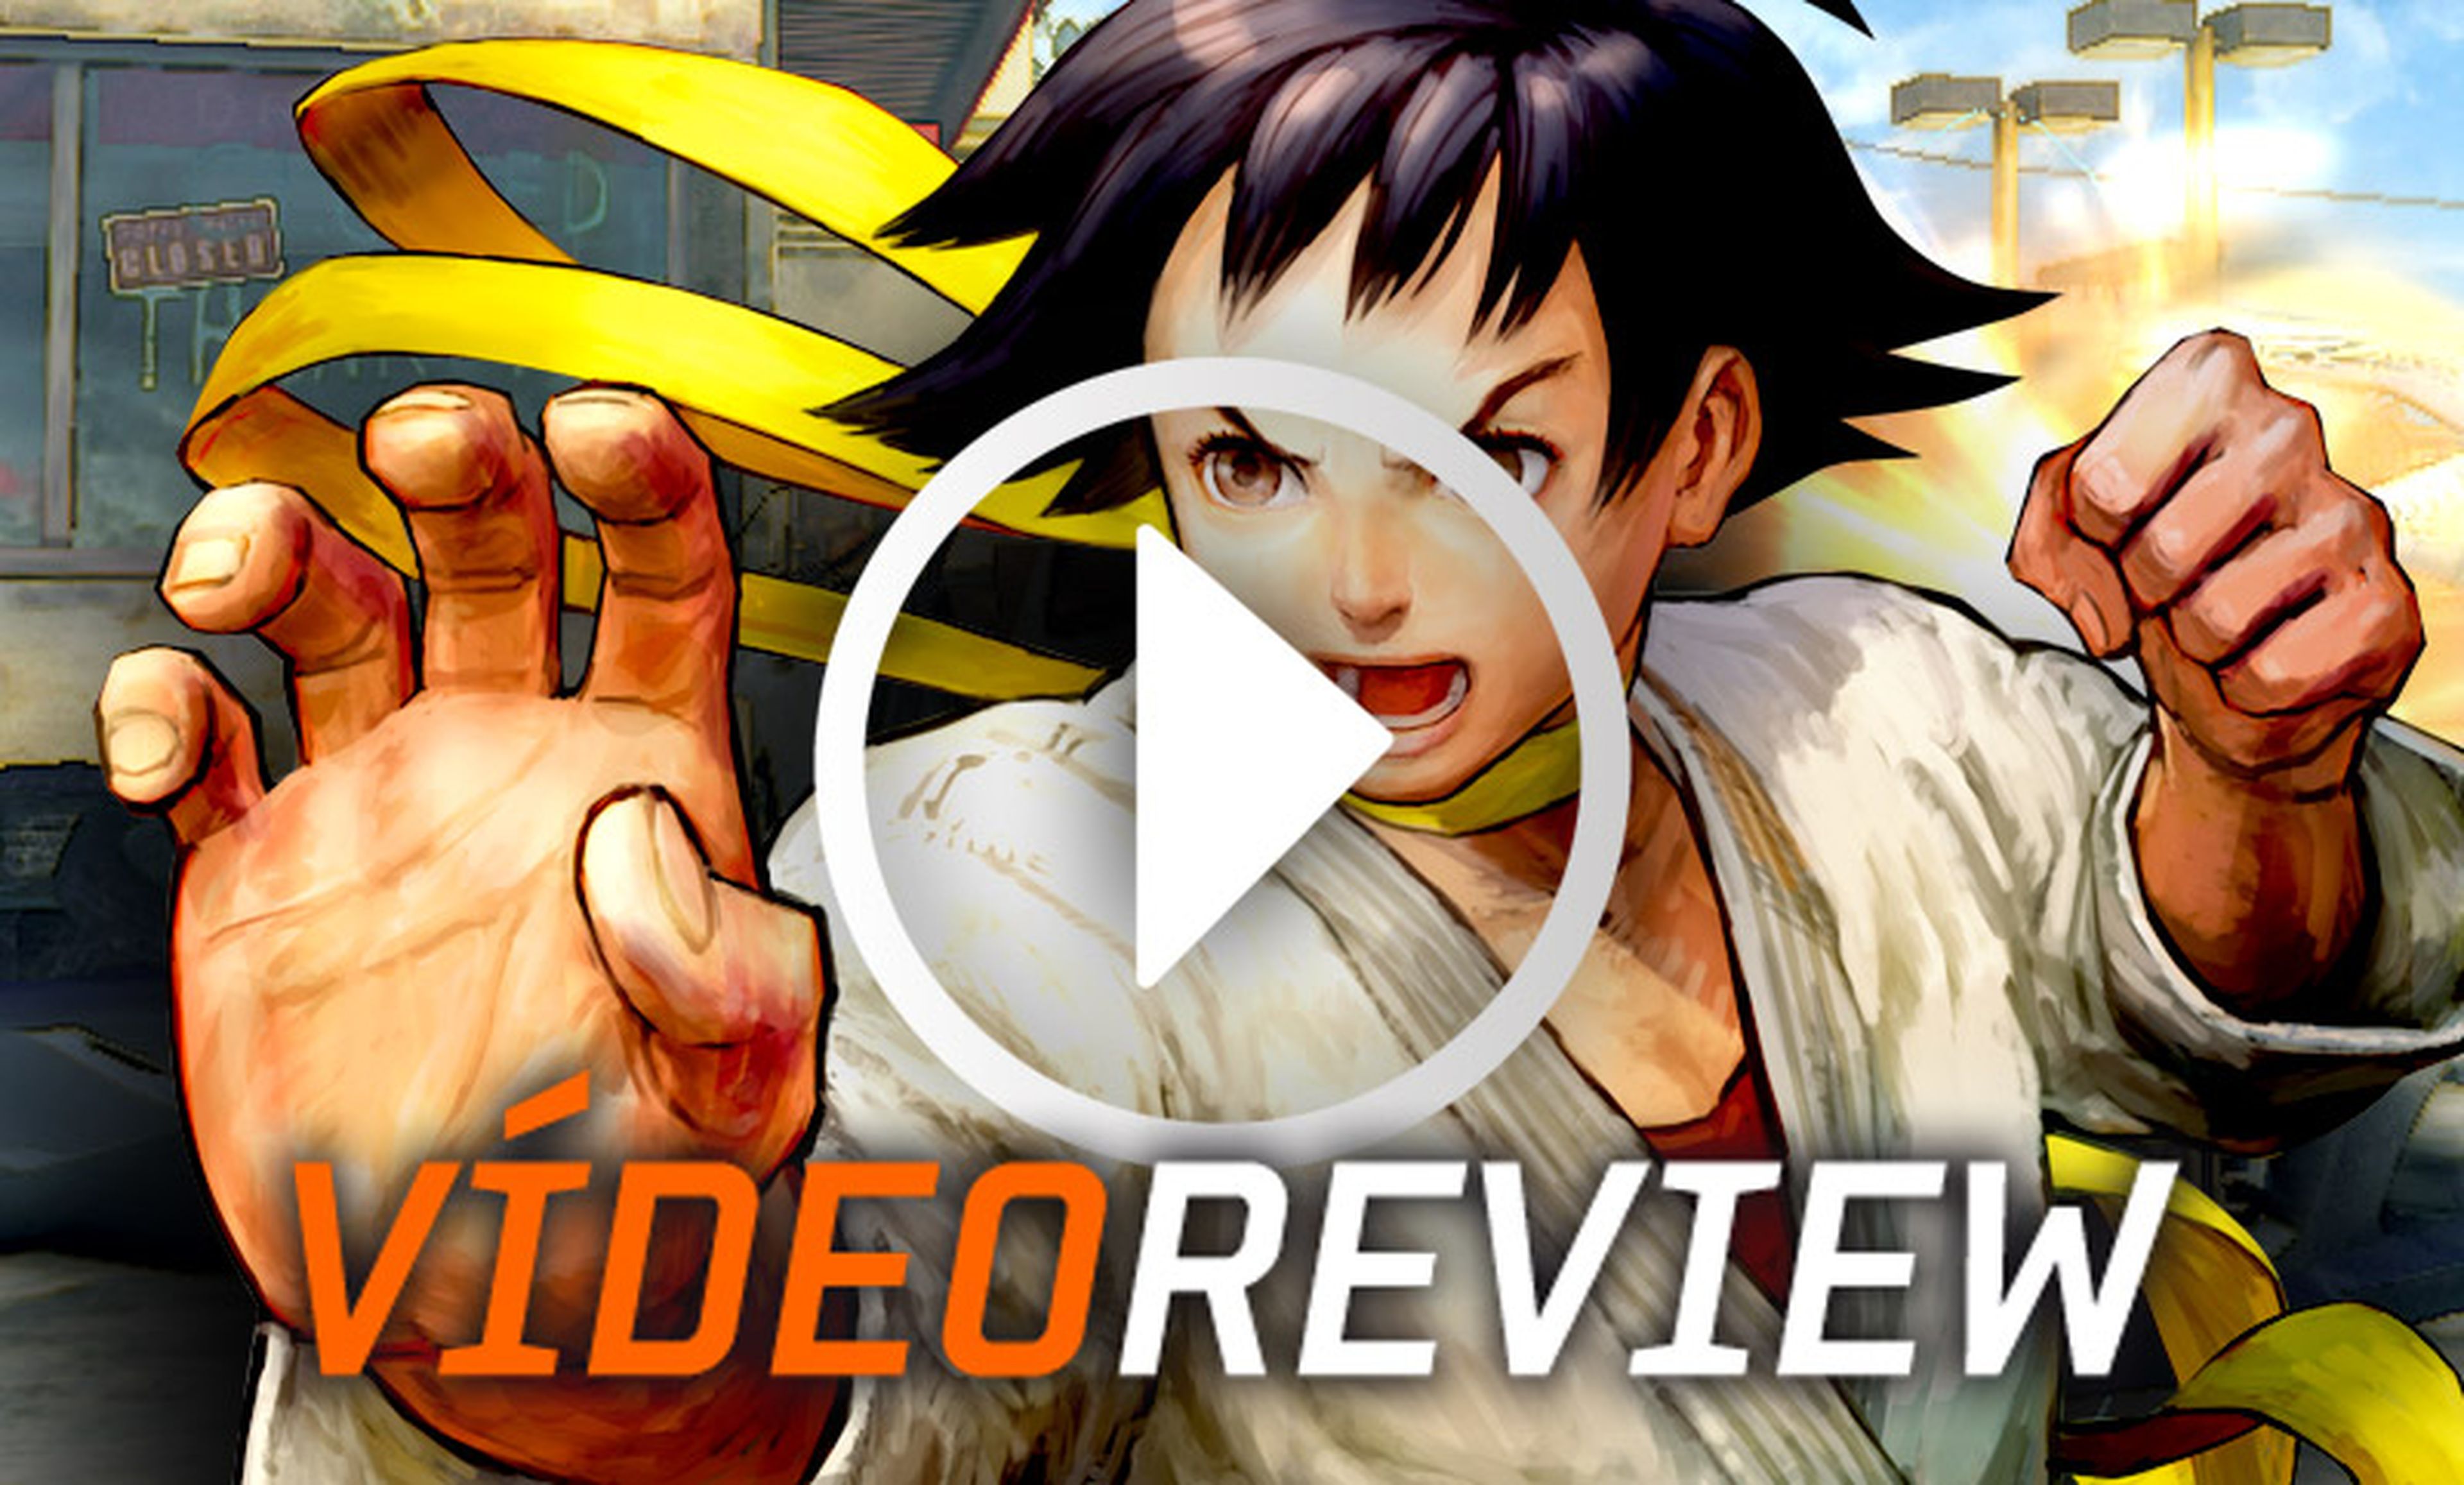 Vídeoreview de Super Street Fighter IV